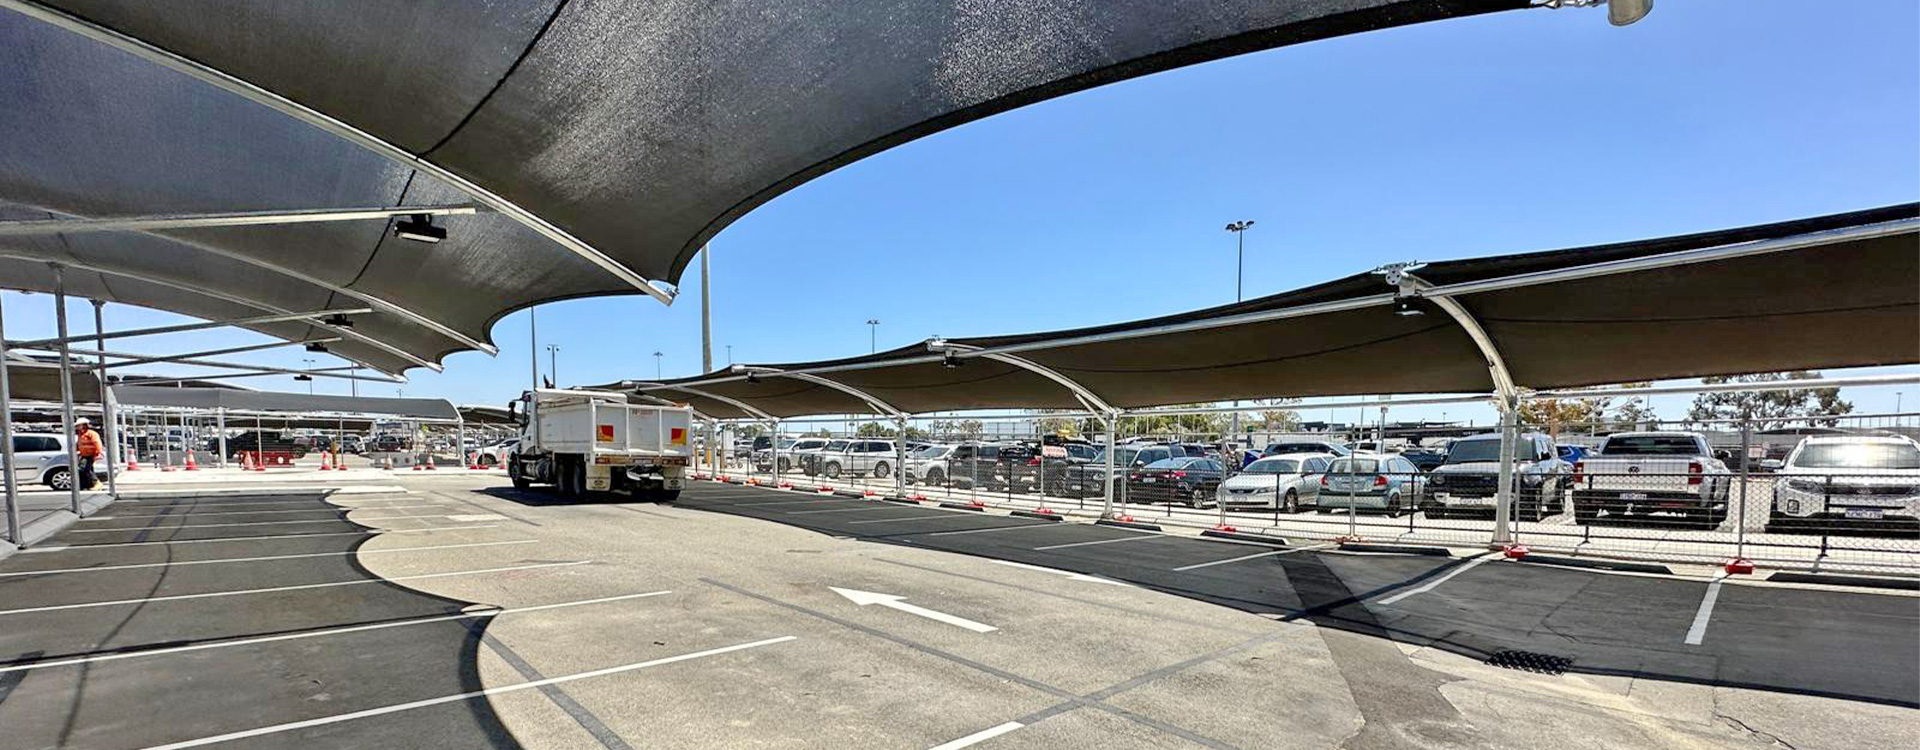 Perth Airport Premium Carpark